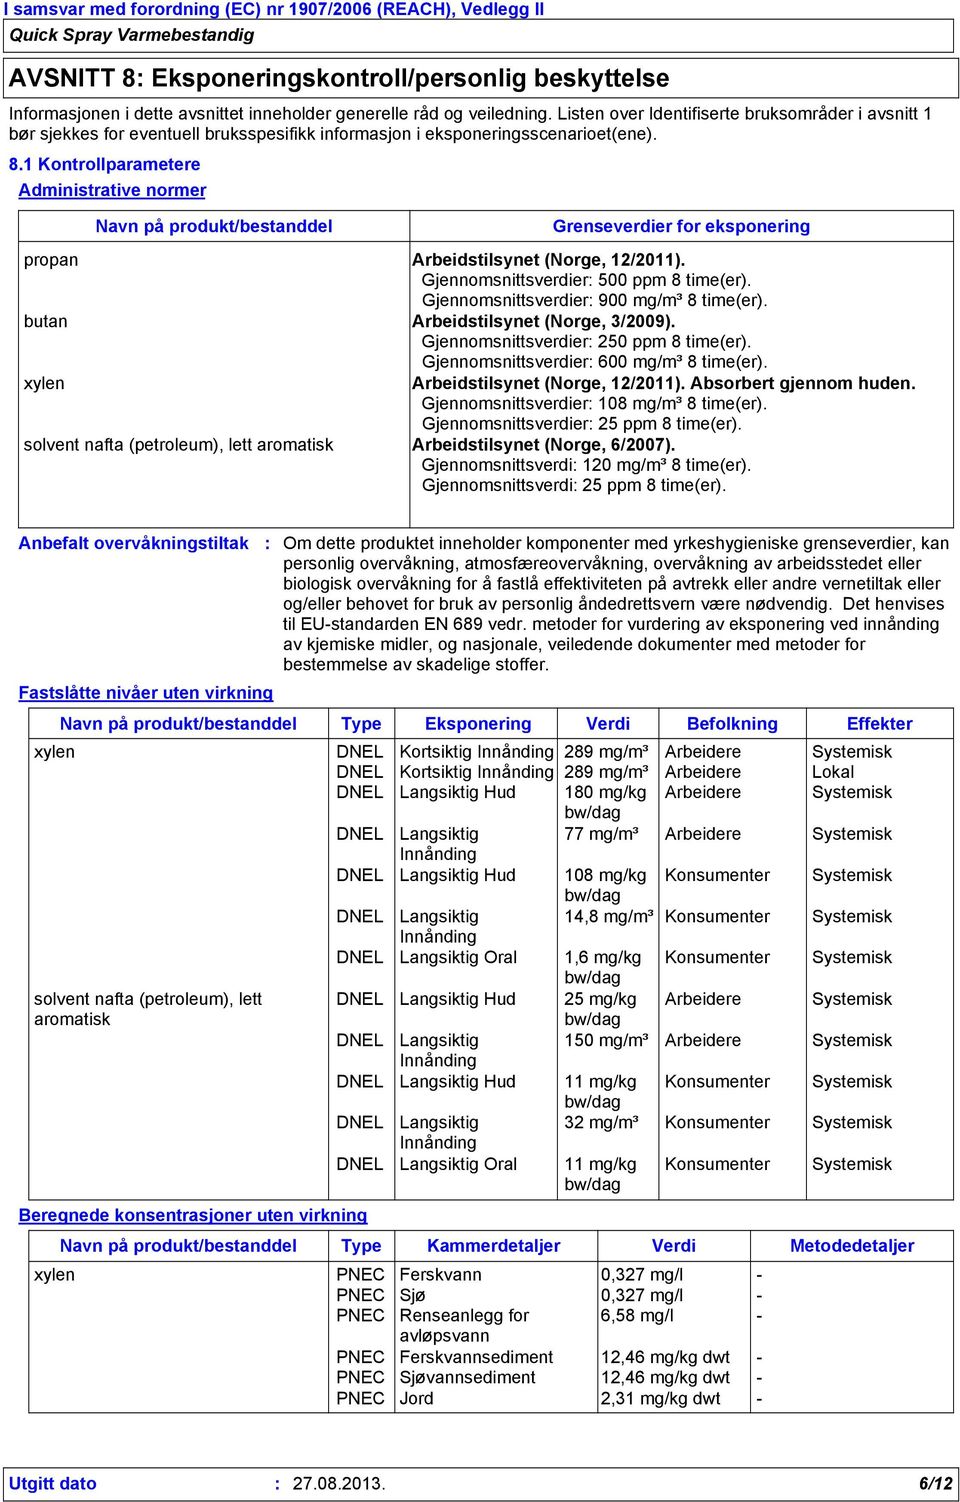 1 Kontrollparametere Administrative normer Navn på produkt/bestanddel Grenseverdier for eksponering propan Arbeidstilsynet (Norge, 12/2011). Gjennomsnittsverdier 500 ppm 8 time(er).